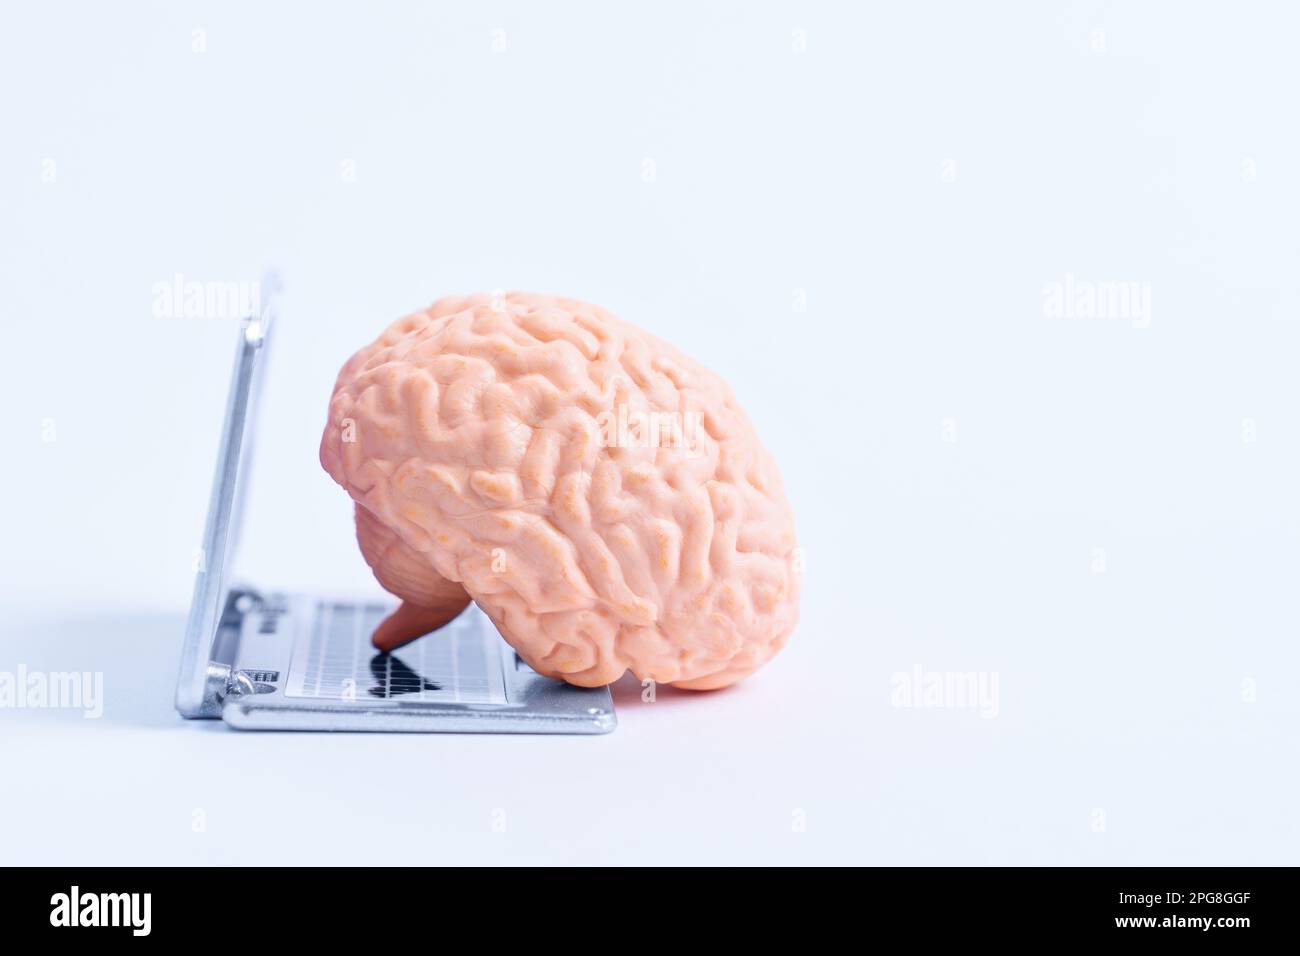 Modello anatomico di un cervello umano utilizzando una replica di un laptop in miniatura, che rappresenta l'idea di intelligenza artificiale. Foto Stock